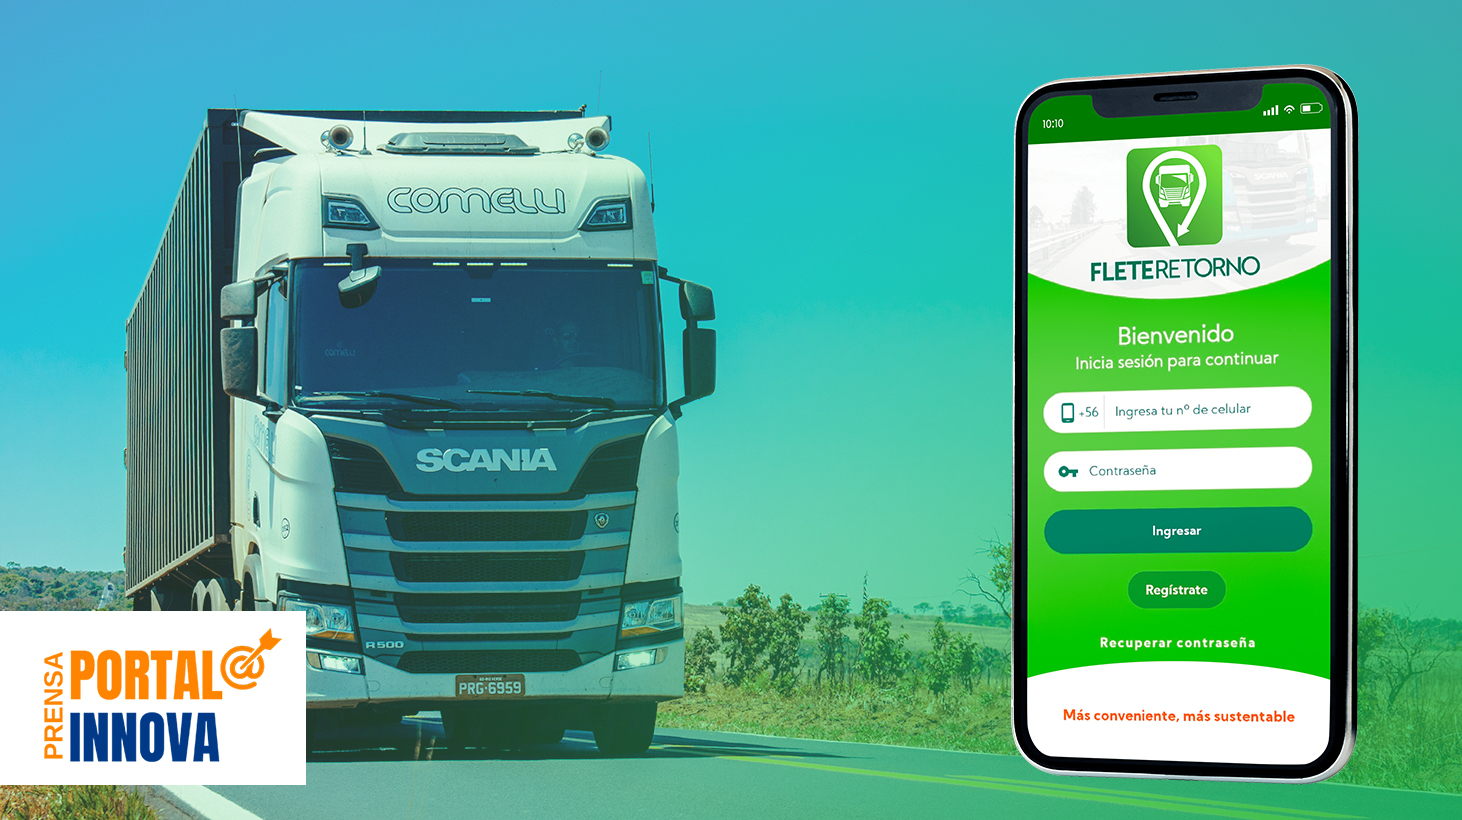 Fleteretorno, la app móvil que reutiliza los espacios vacíos de los camiones